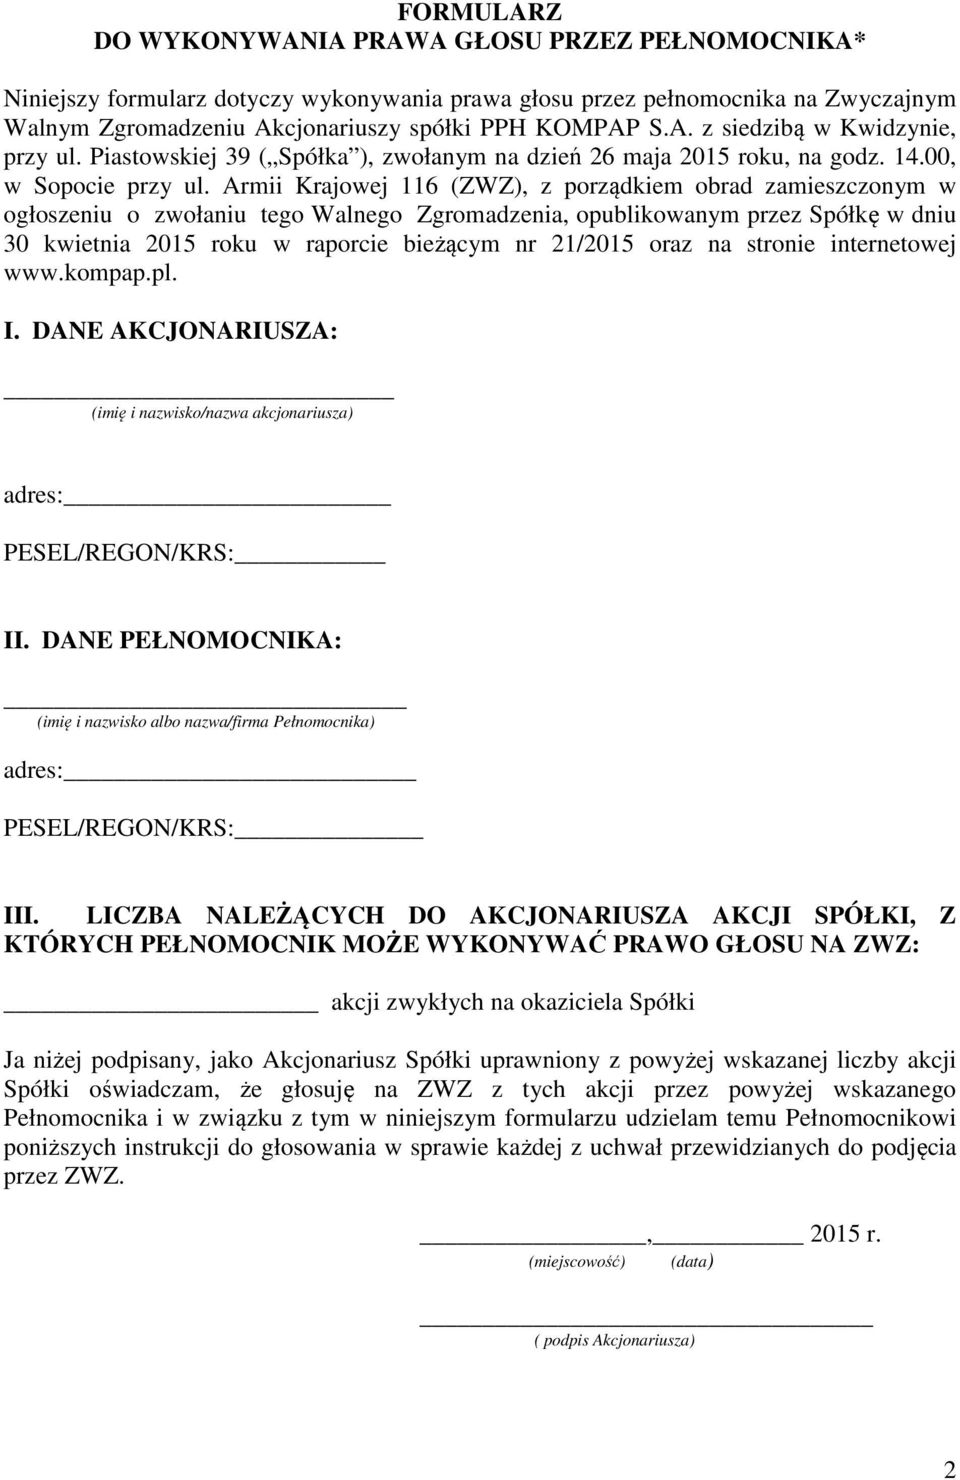 Armii Krajowej 116 (ZWZ), z porządkiem obrad zamieszczonym w ogłoszeniu o zwołaniu tego Walnego Zgromadzenia, opublikowanym przez Spółkę w dniu 30 kwietnia 2015 roku w raporcie bieżącym nr 21/2015